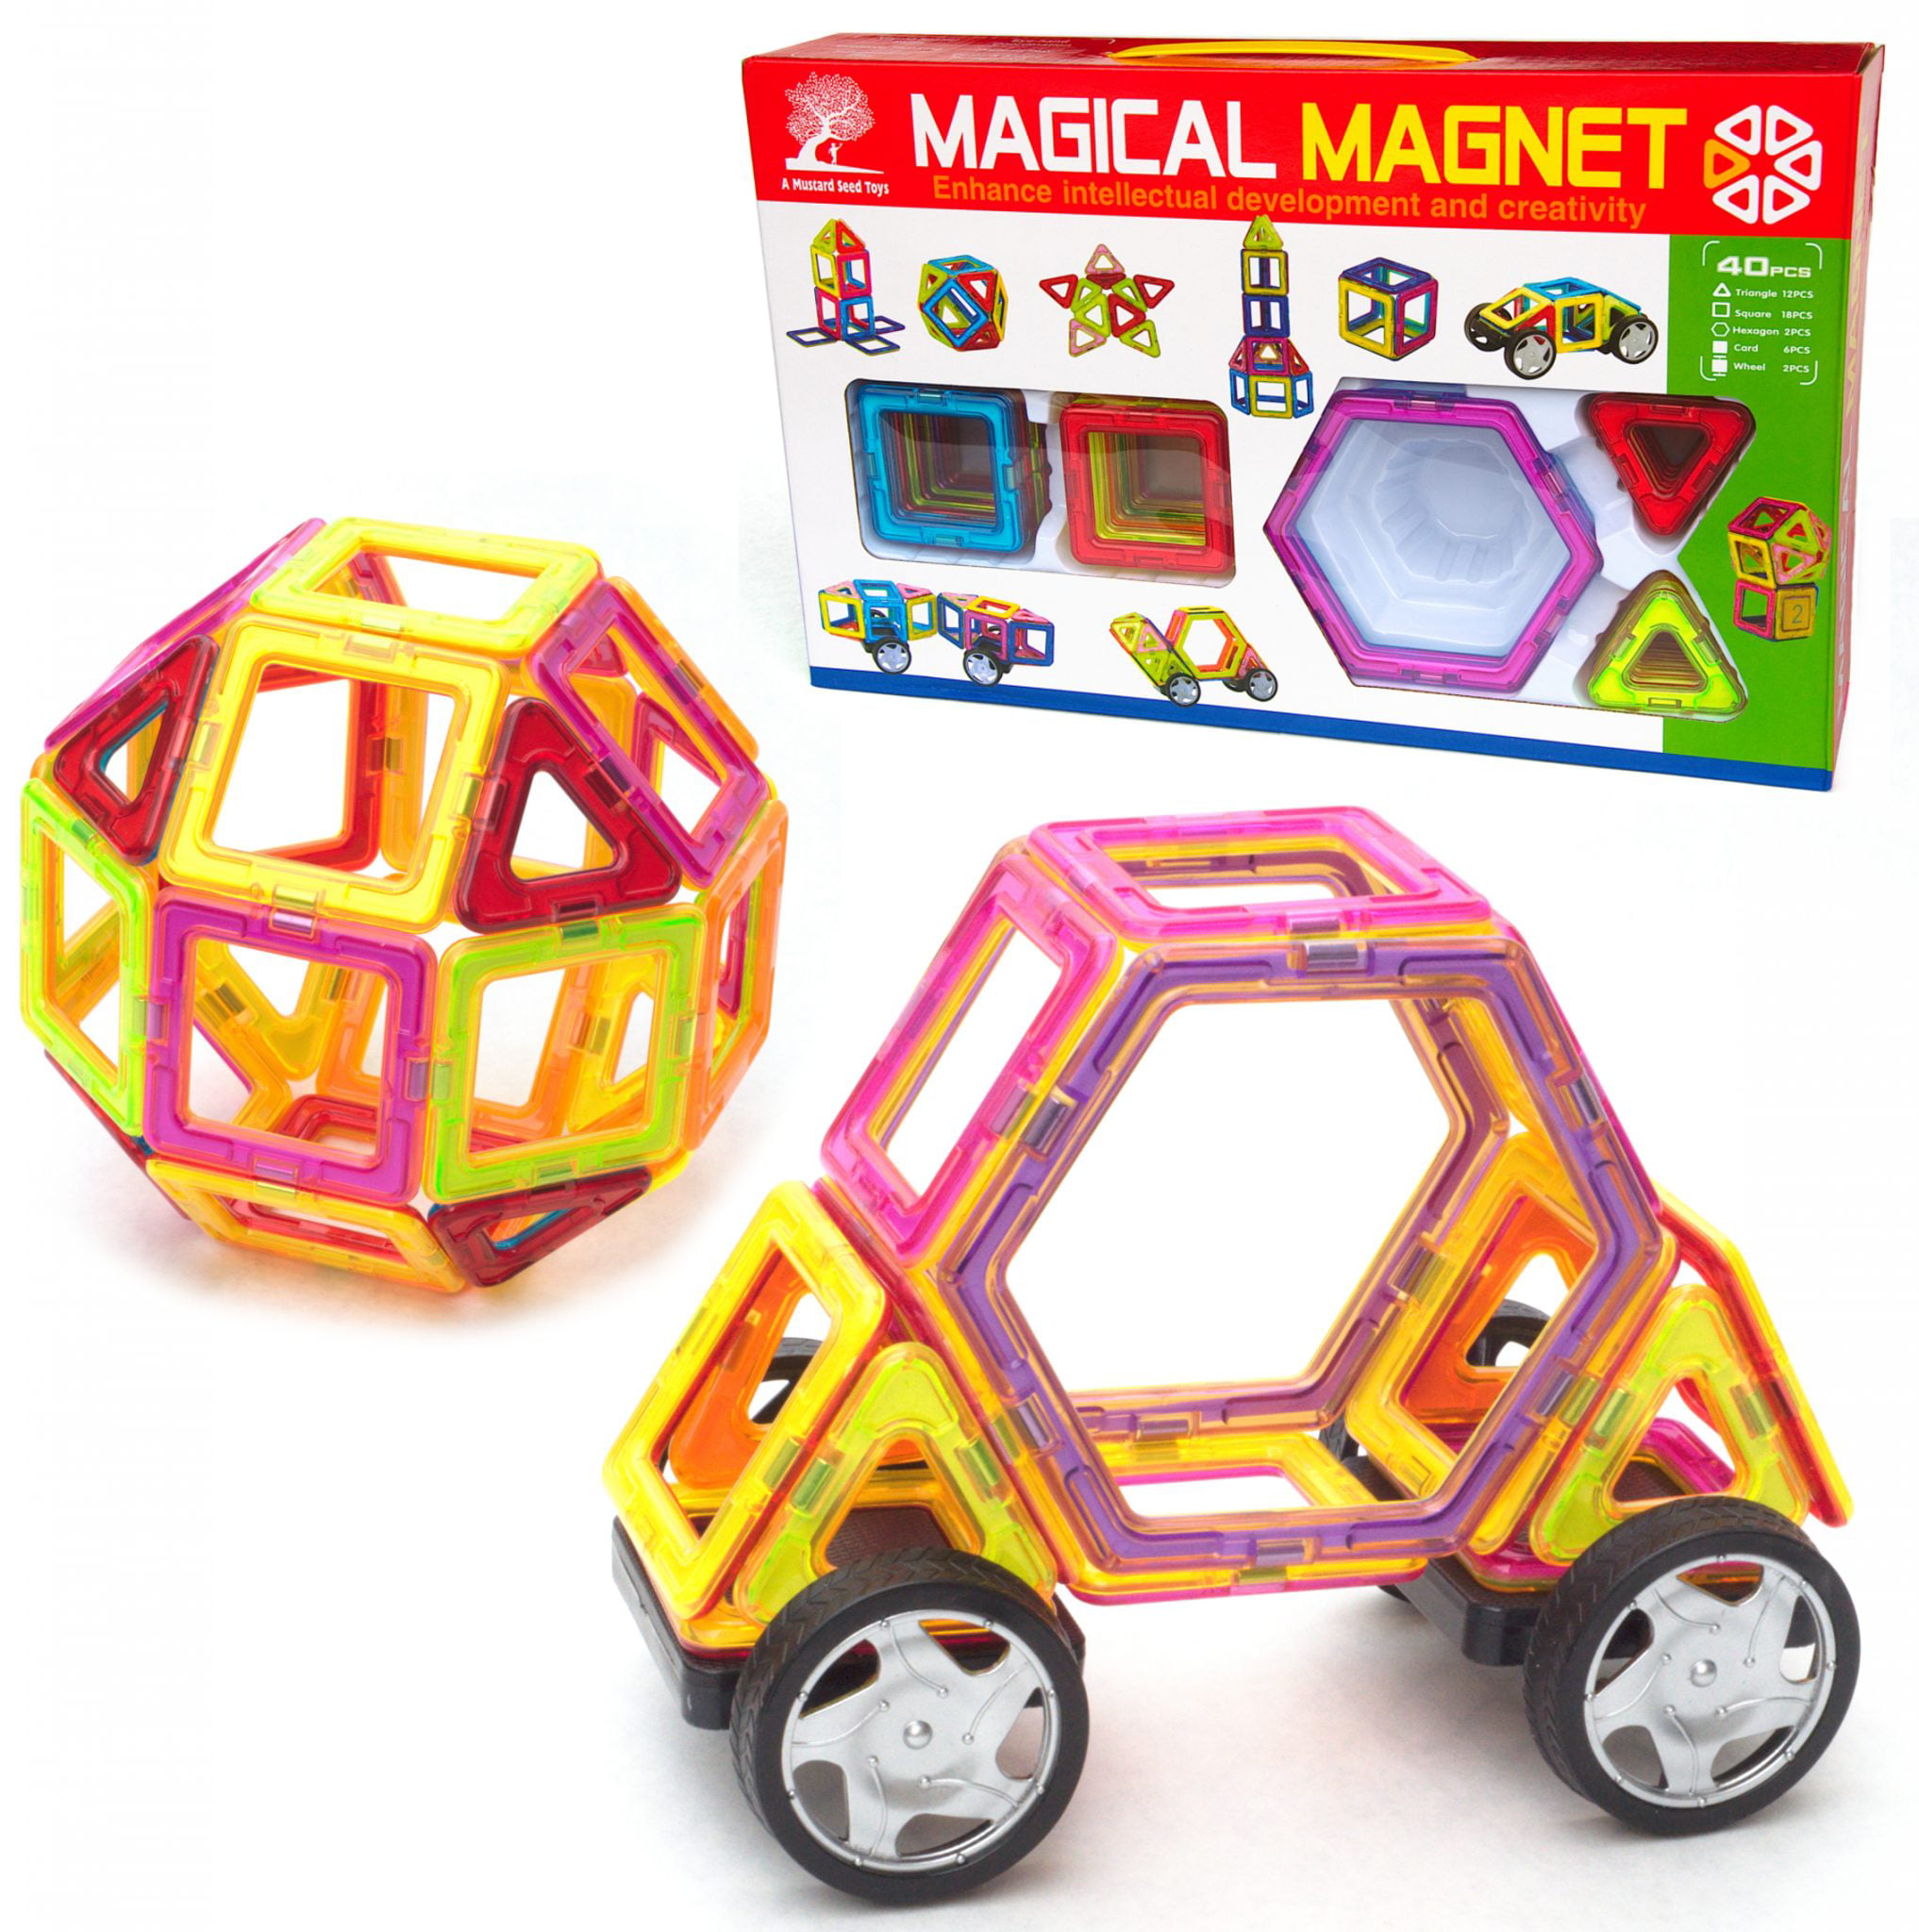 Magnetic 3D Construction Building Block Toy 40-166 Piece Set & Storage Box 